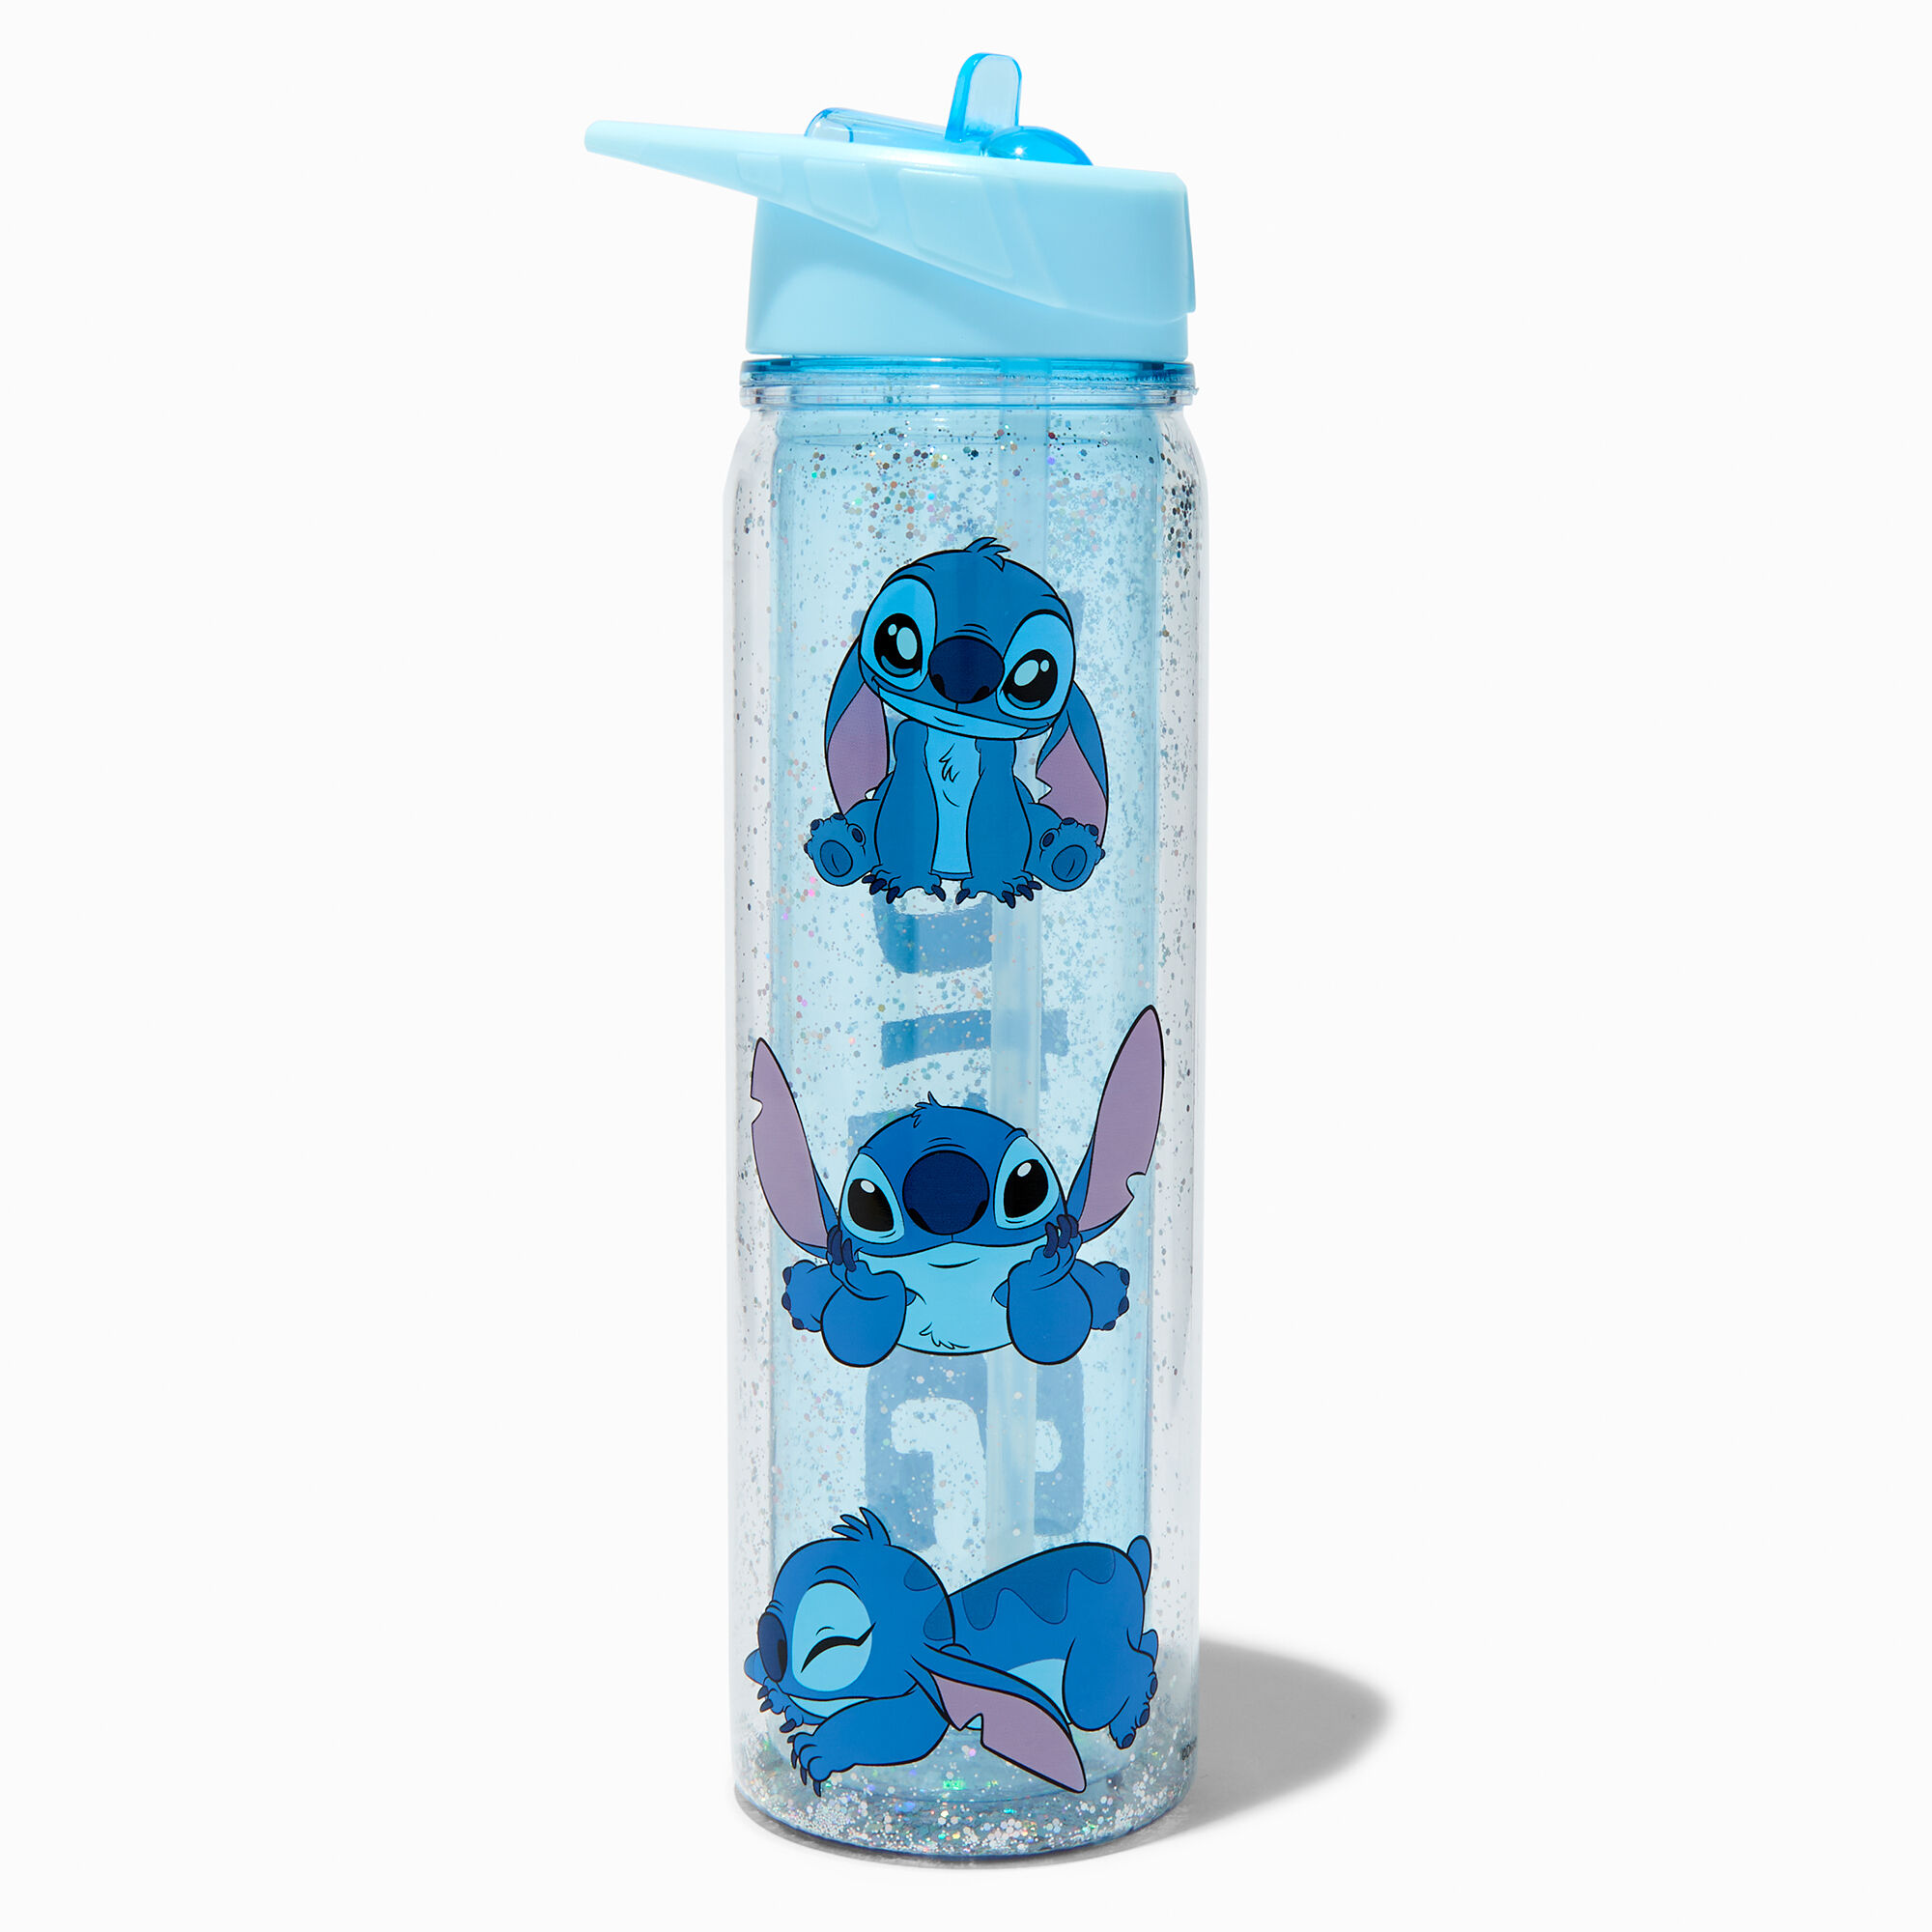 View Claires Disney Stitch Sleepy Water Bottle information